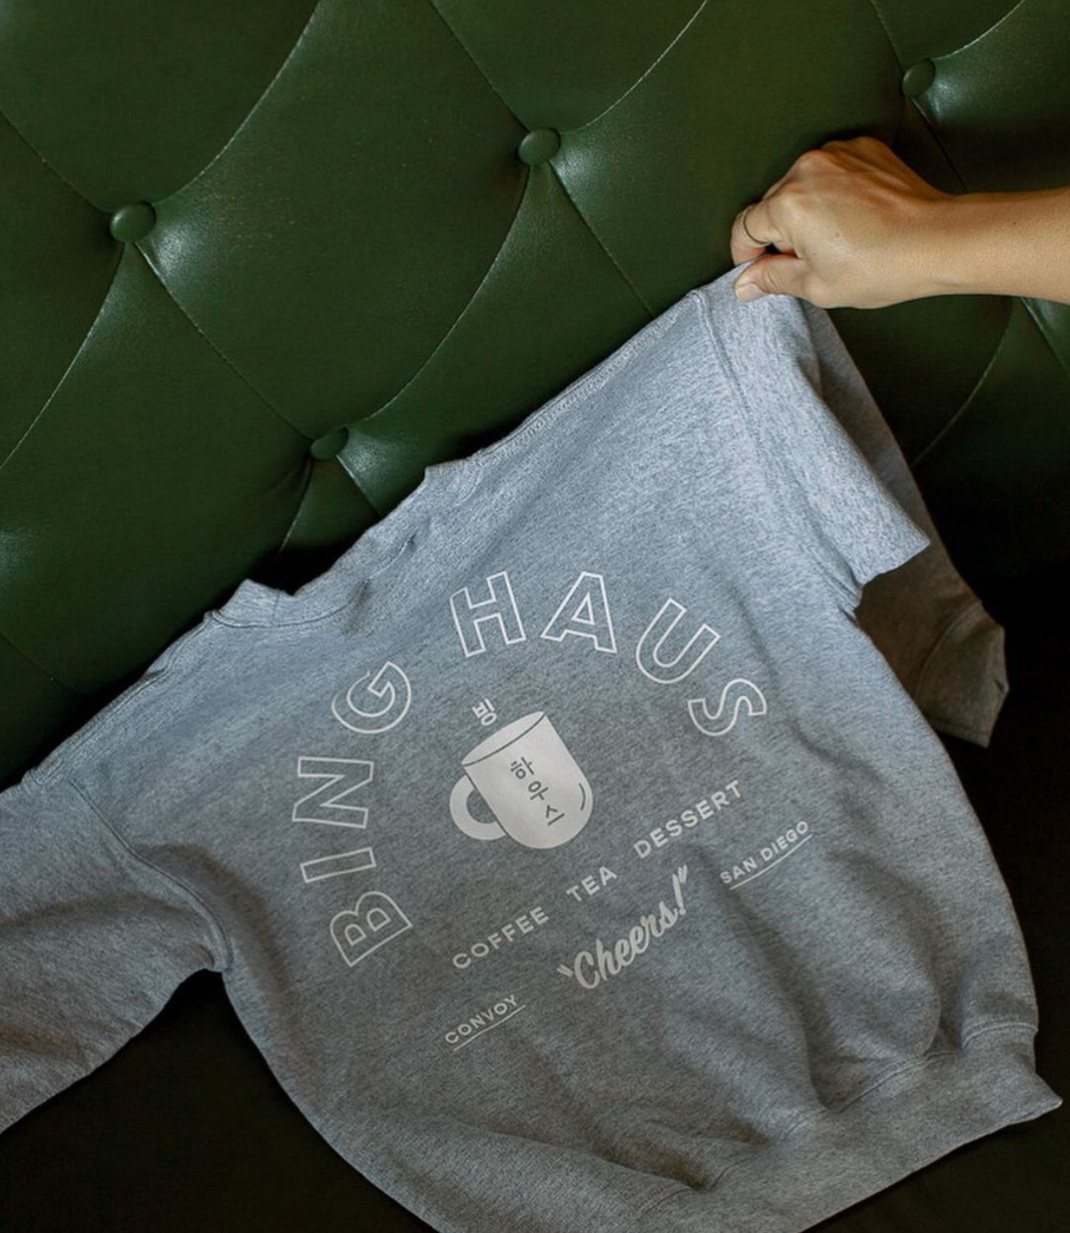 咖啡店Bing Haus 咖啡店 插画设计 字体设计 图形设计 文化衫 logo设计 vi设计 空间设计